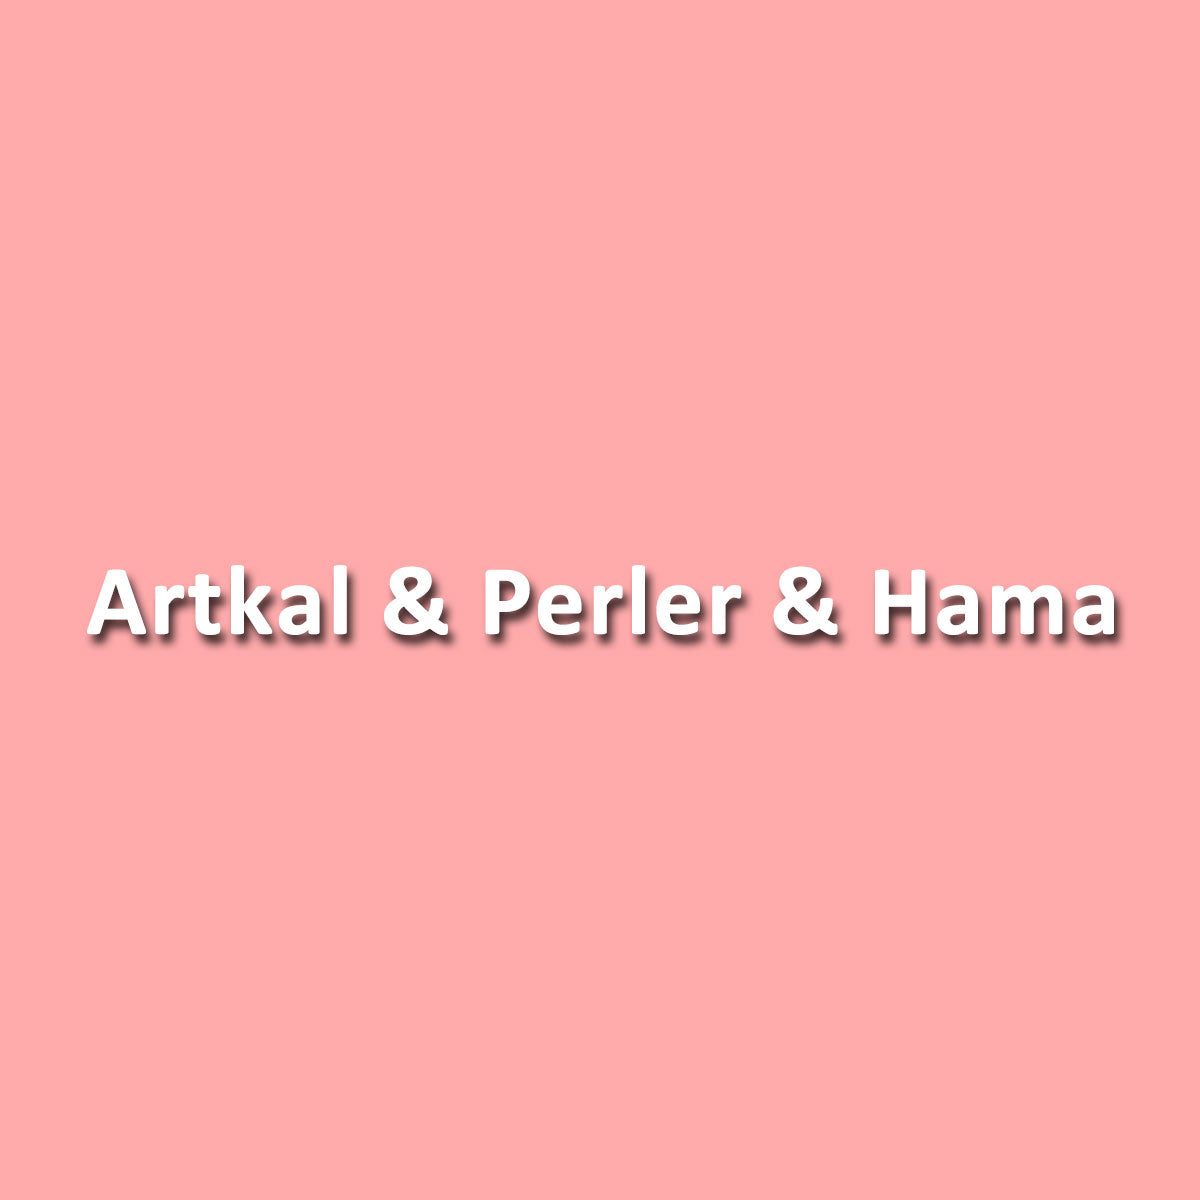 Hvilken serie af Artkal-perler er kompatible med perler- og hama-perler?